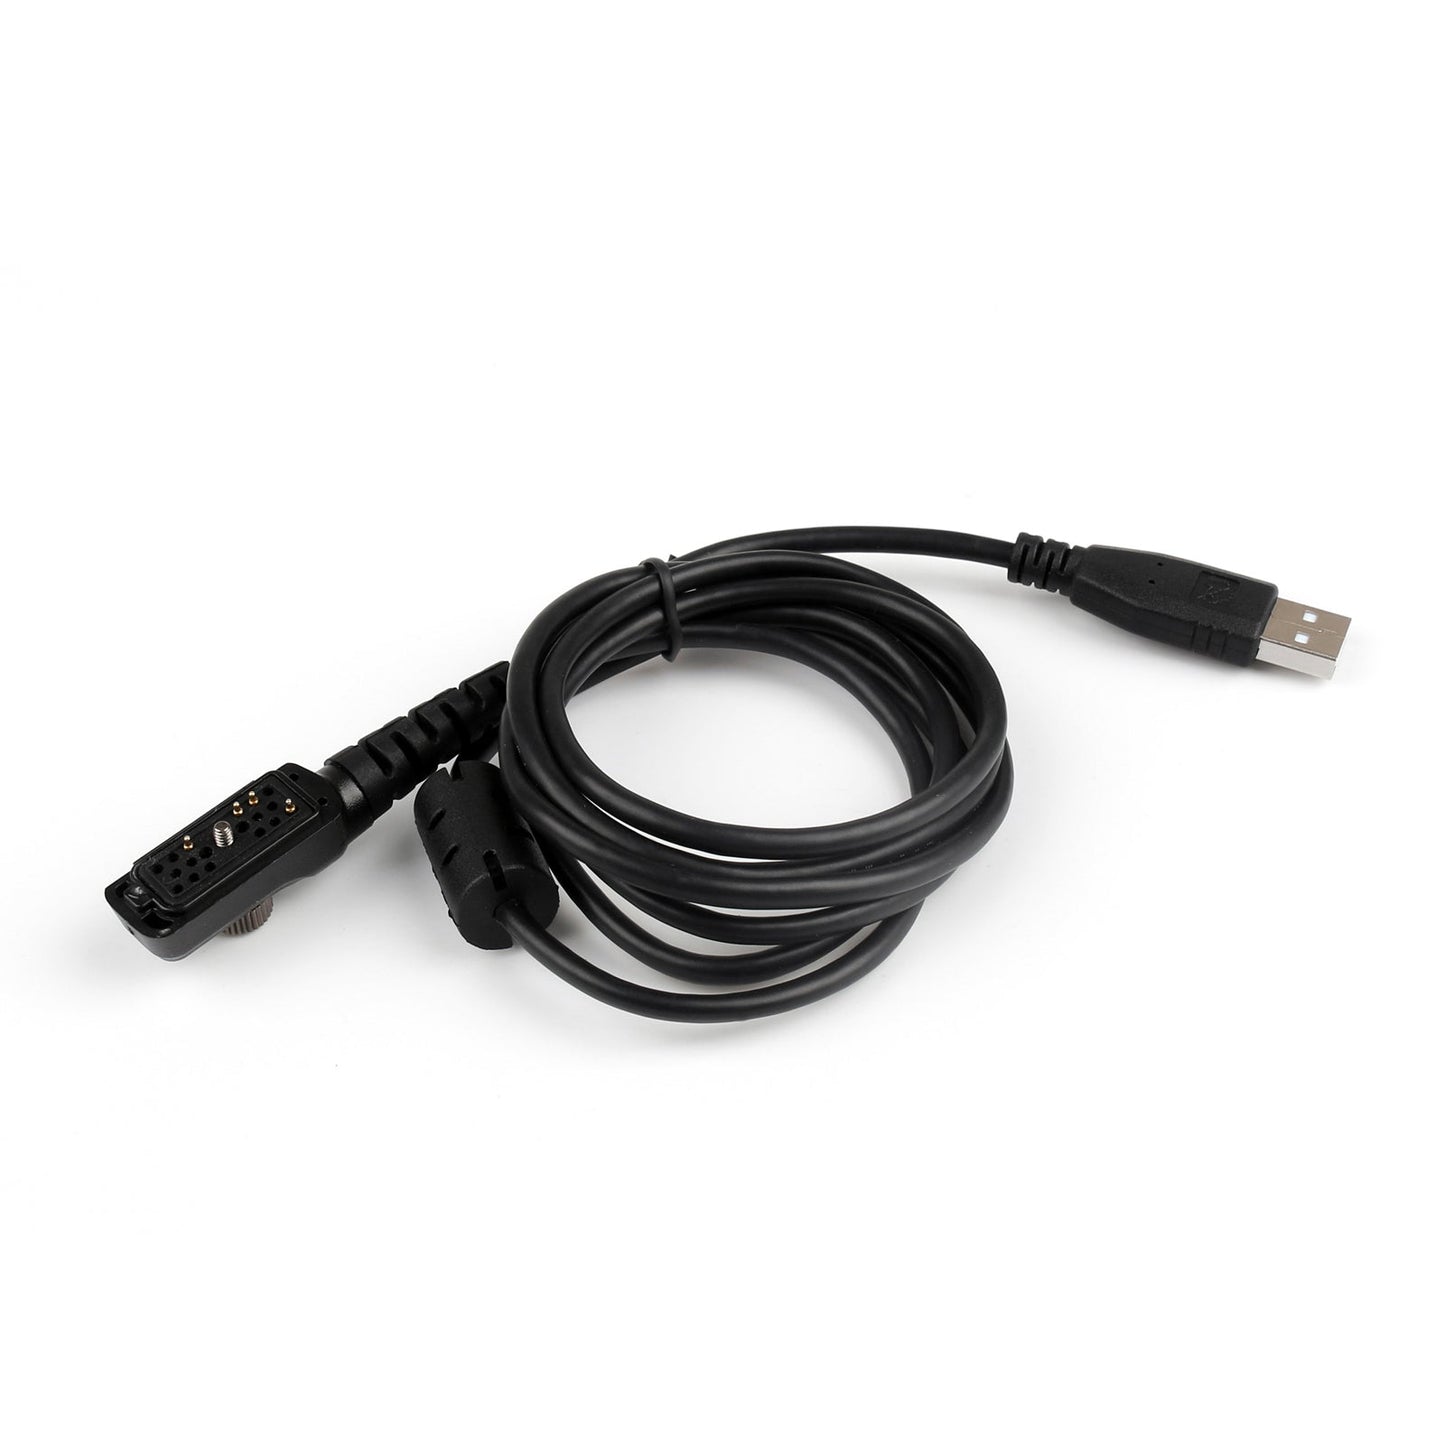 USB -Programmierkabel für Hythytera PD700 PD705 PD705G PD780 PD785 785G PD580